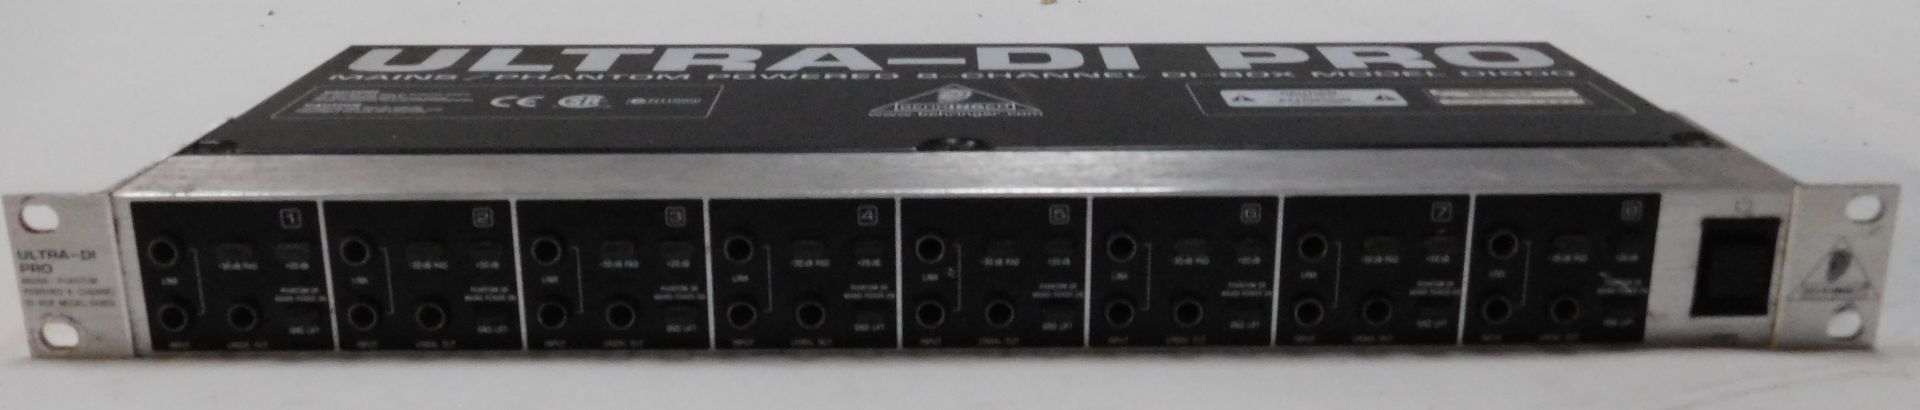 Botex DR-512 DMX Recorder, Pulse MPS Master DJ Player, Behringer Feedback Destroyer Pro, Model - Image 9 of 16